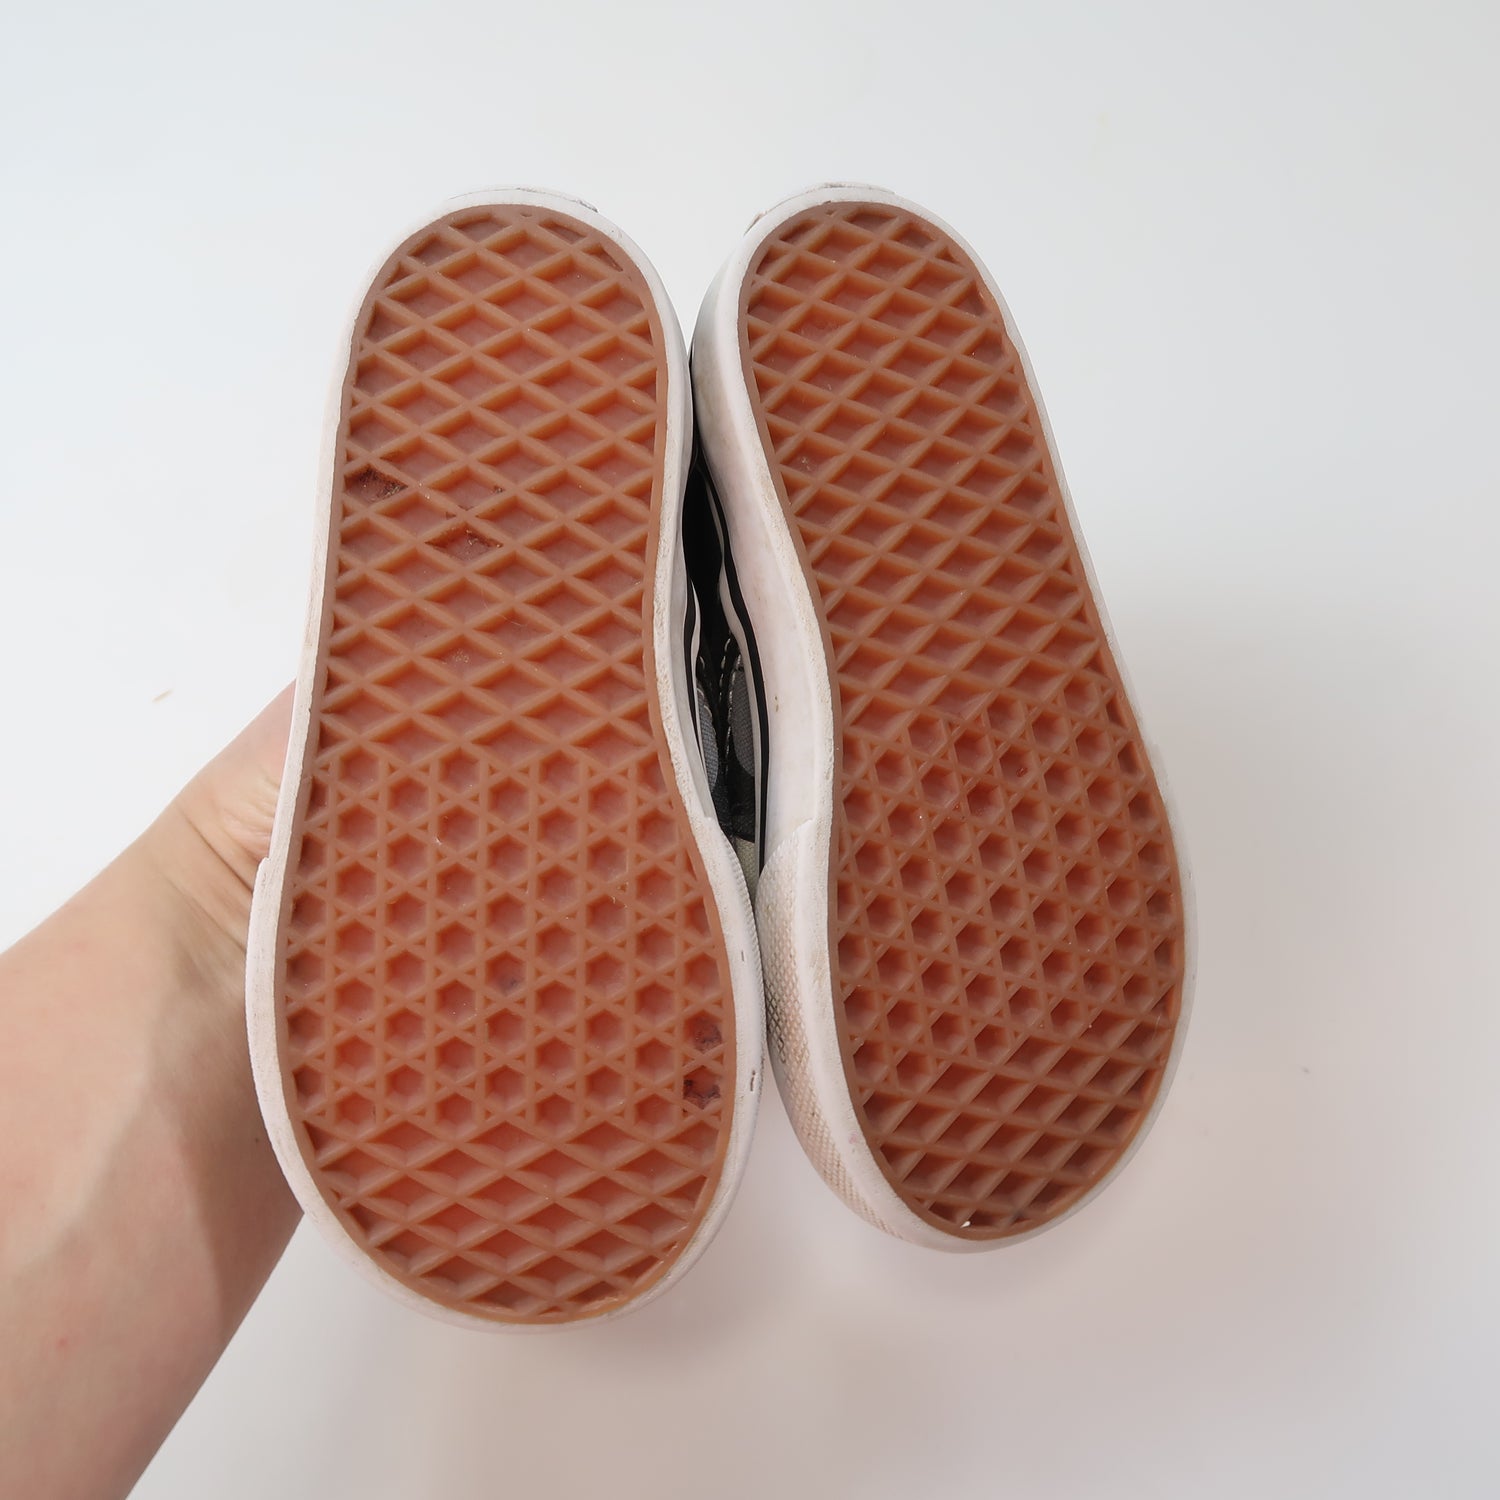 Vans - Shoes (Shoes - 6.5)